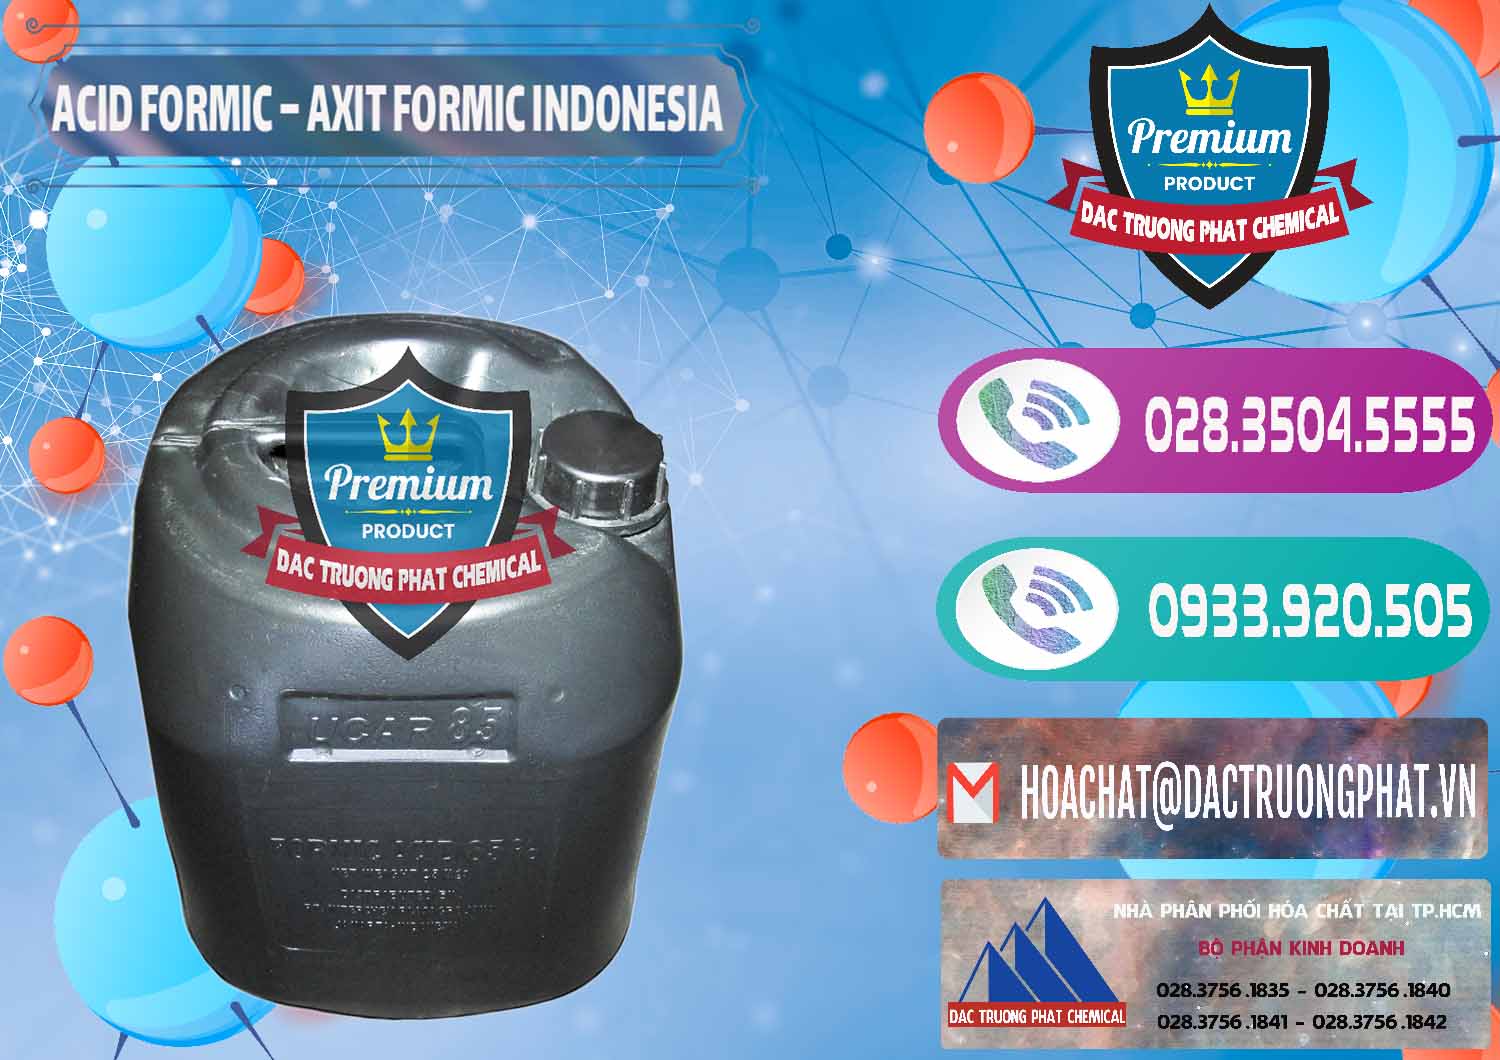 Cty nhập khẩu _ bán Acid Formic - Axit Formic Indonesia - 0026 - Nơi chuyên bán và phân phối hóa chất tại TP.HCM - hoachatxulynuoc.com